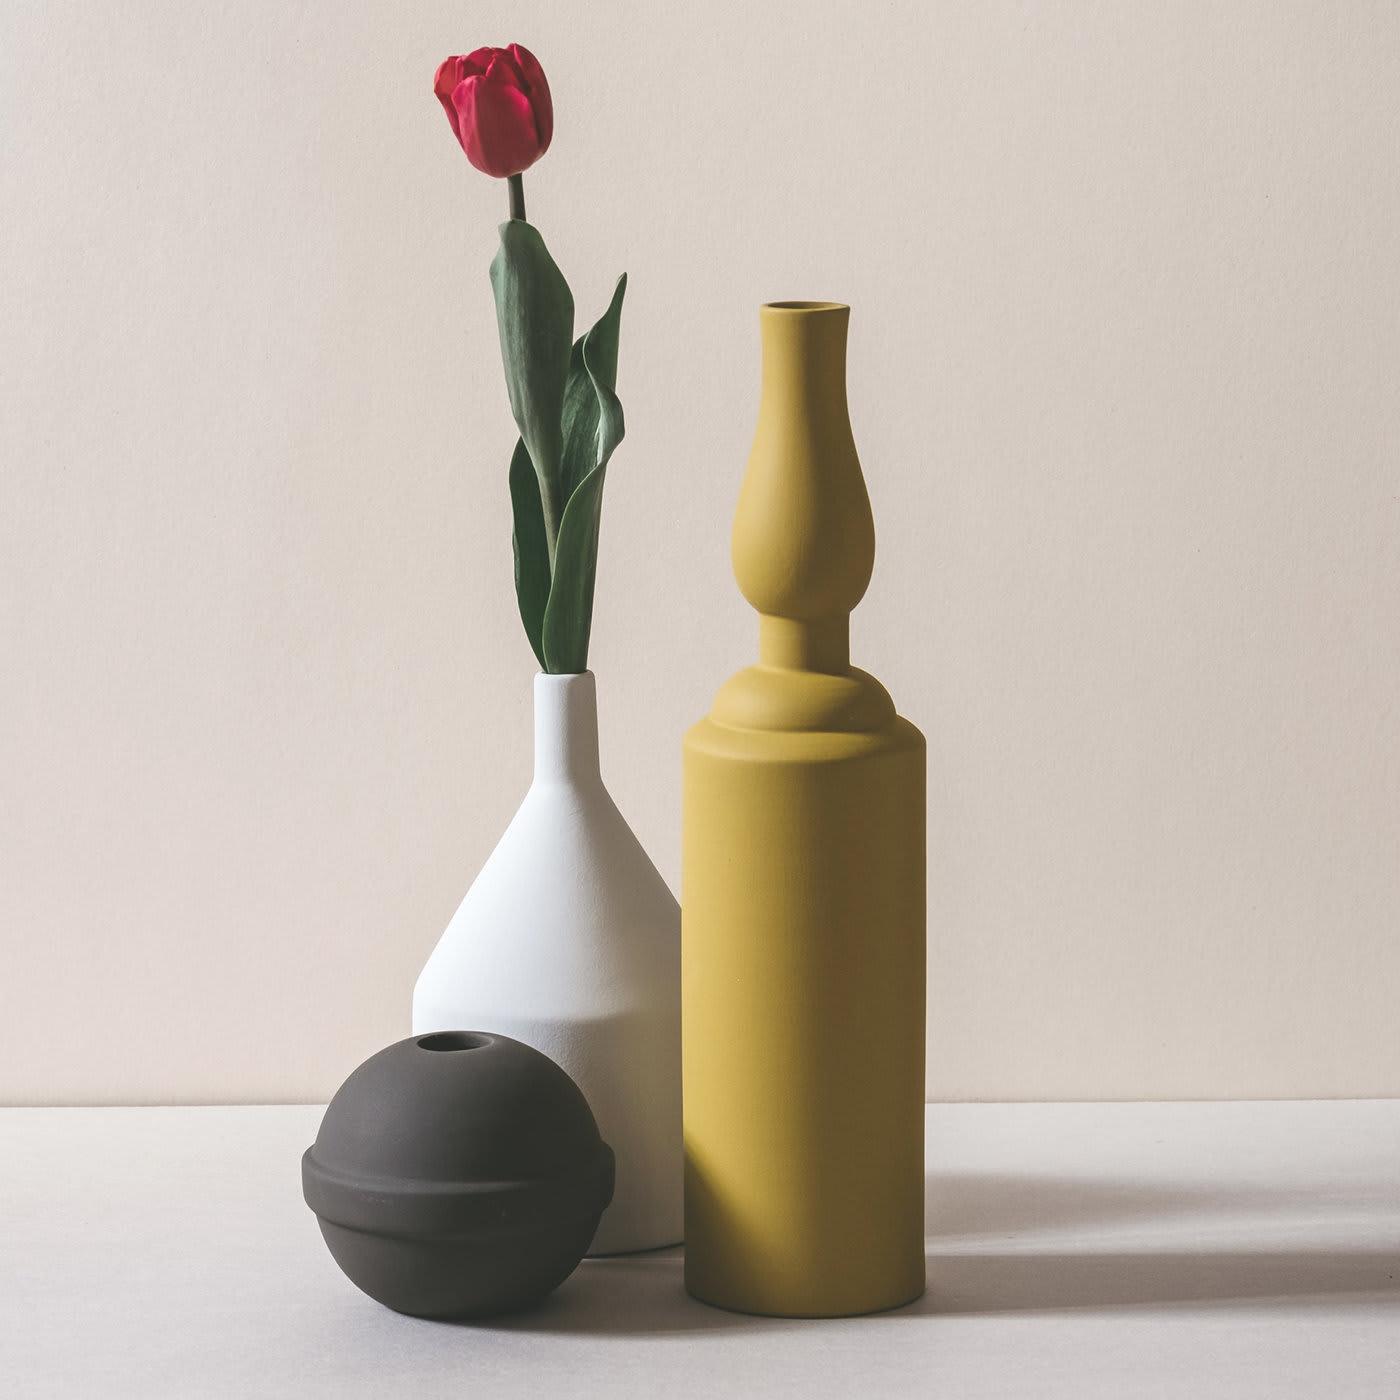 Natura Morta 3-Vase Set #2 - Le Morandine by Sonia Pedrazzini